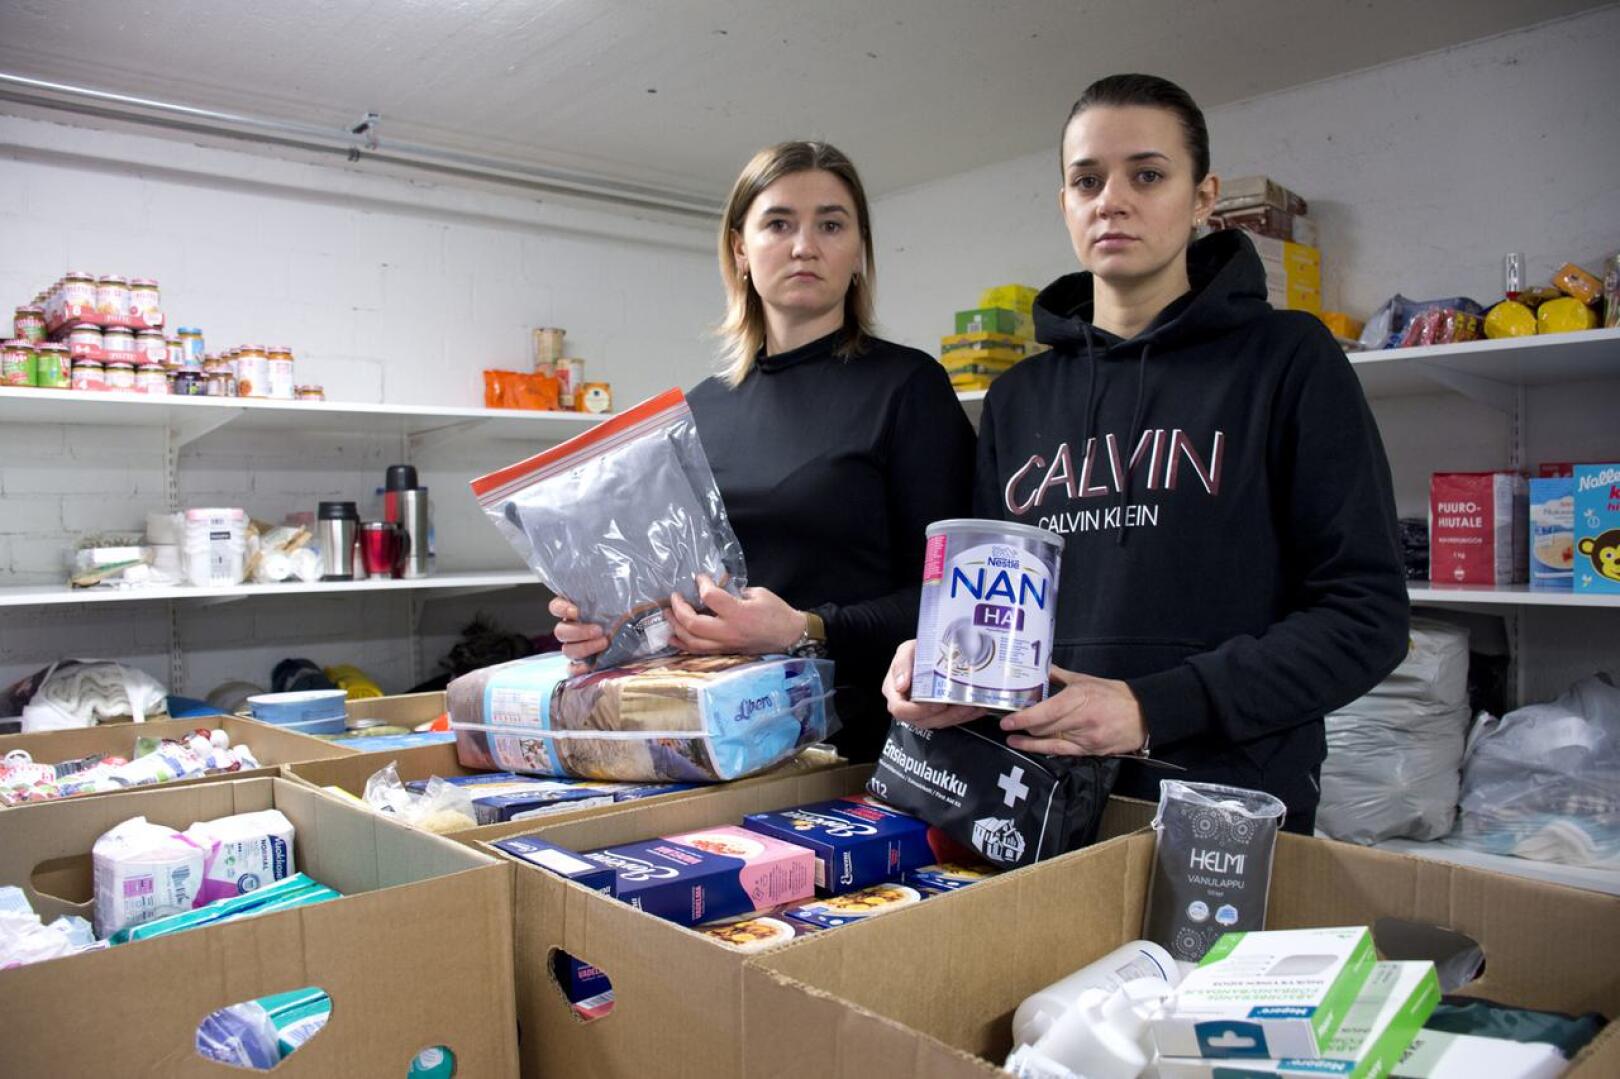 Jokelan pappilan alakertaan avustustarvikkeita on tuotu runsaasti. Marina Hrishchenko ja Marina Hrabko kertovat, että juuri nyt Ukrainaan tarvitaan etenkin vauvanruokaa ja lämpökerrastoja.